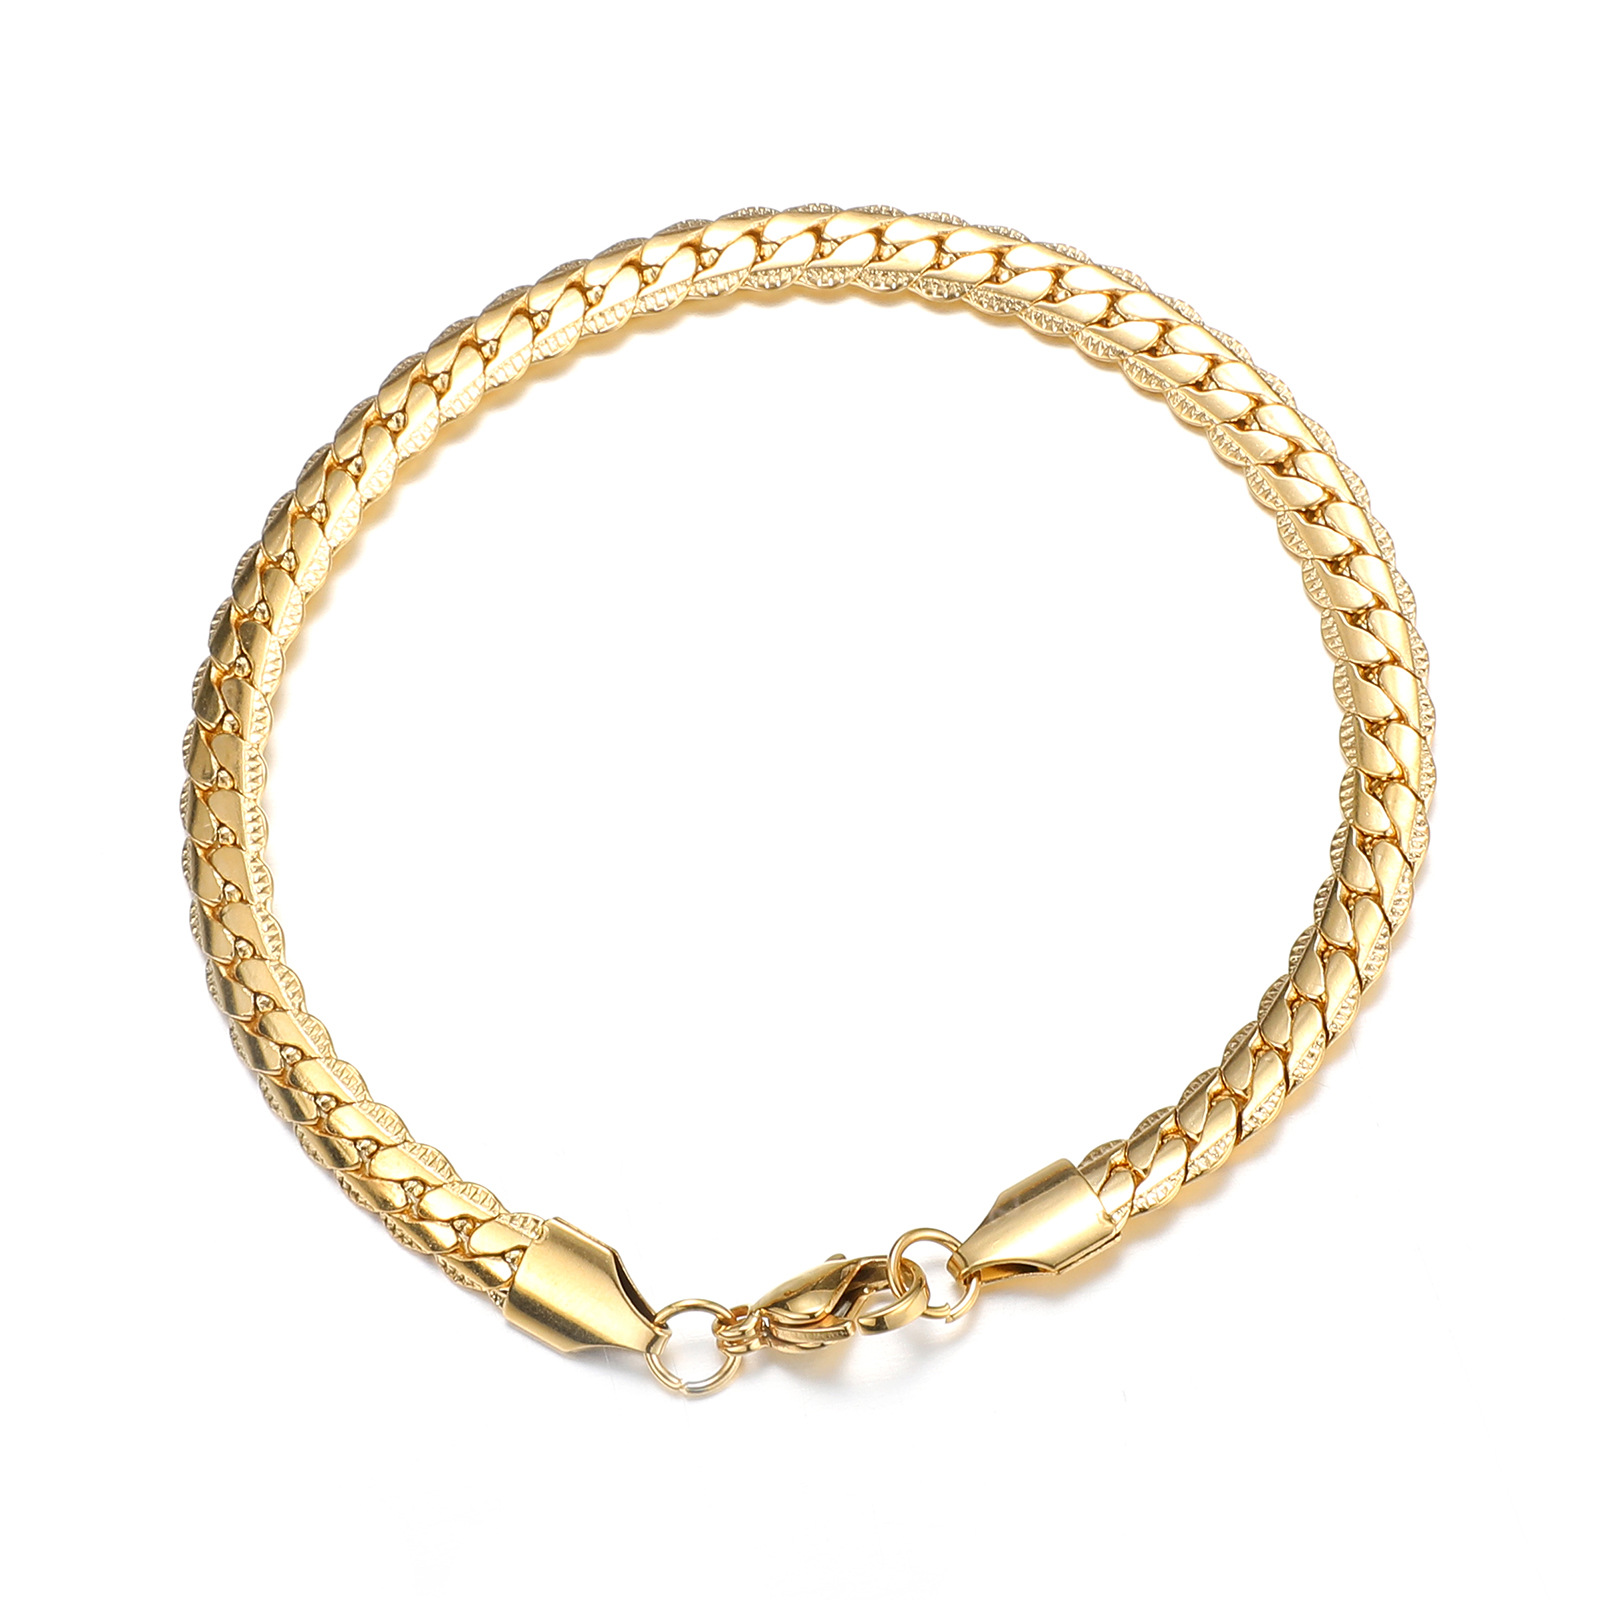 1:Gold bracelet (21cm long)